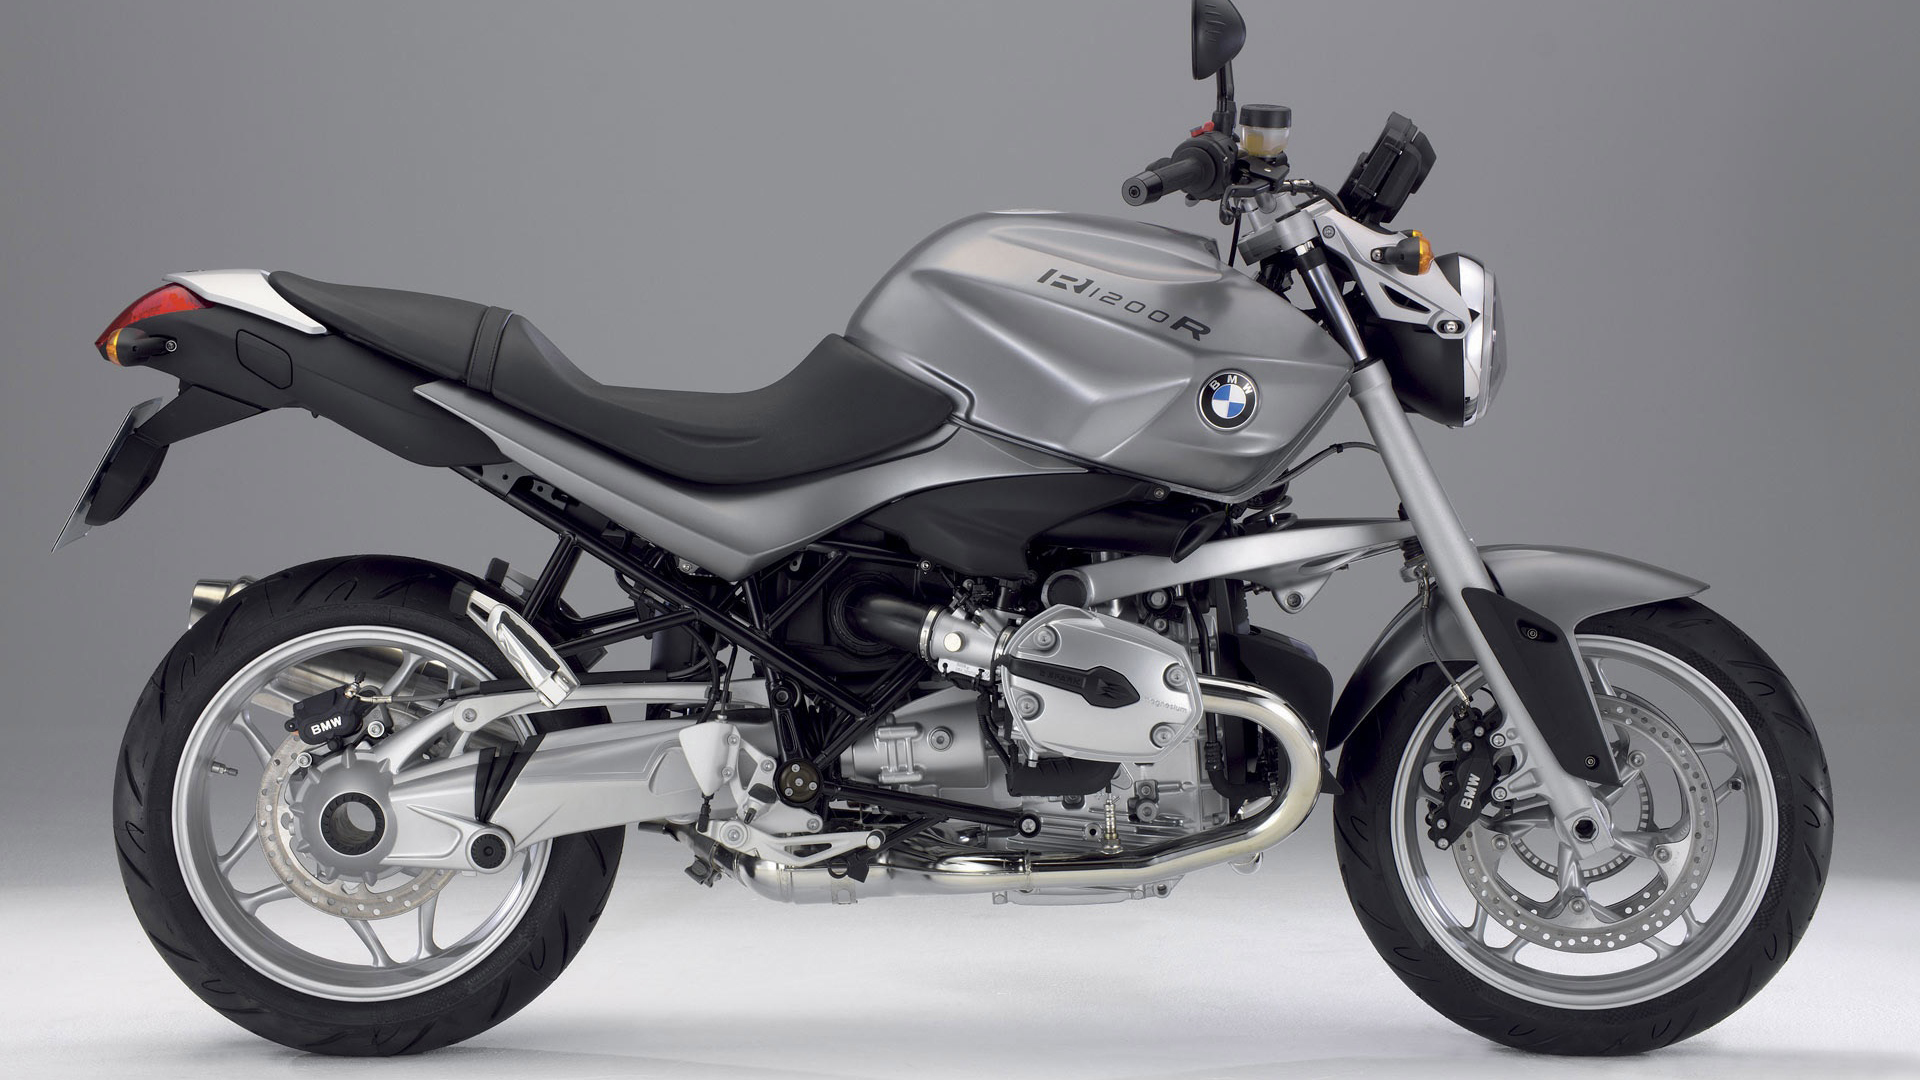 BMW R 1200149412275 - BMW R 1200 - Motorcycles